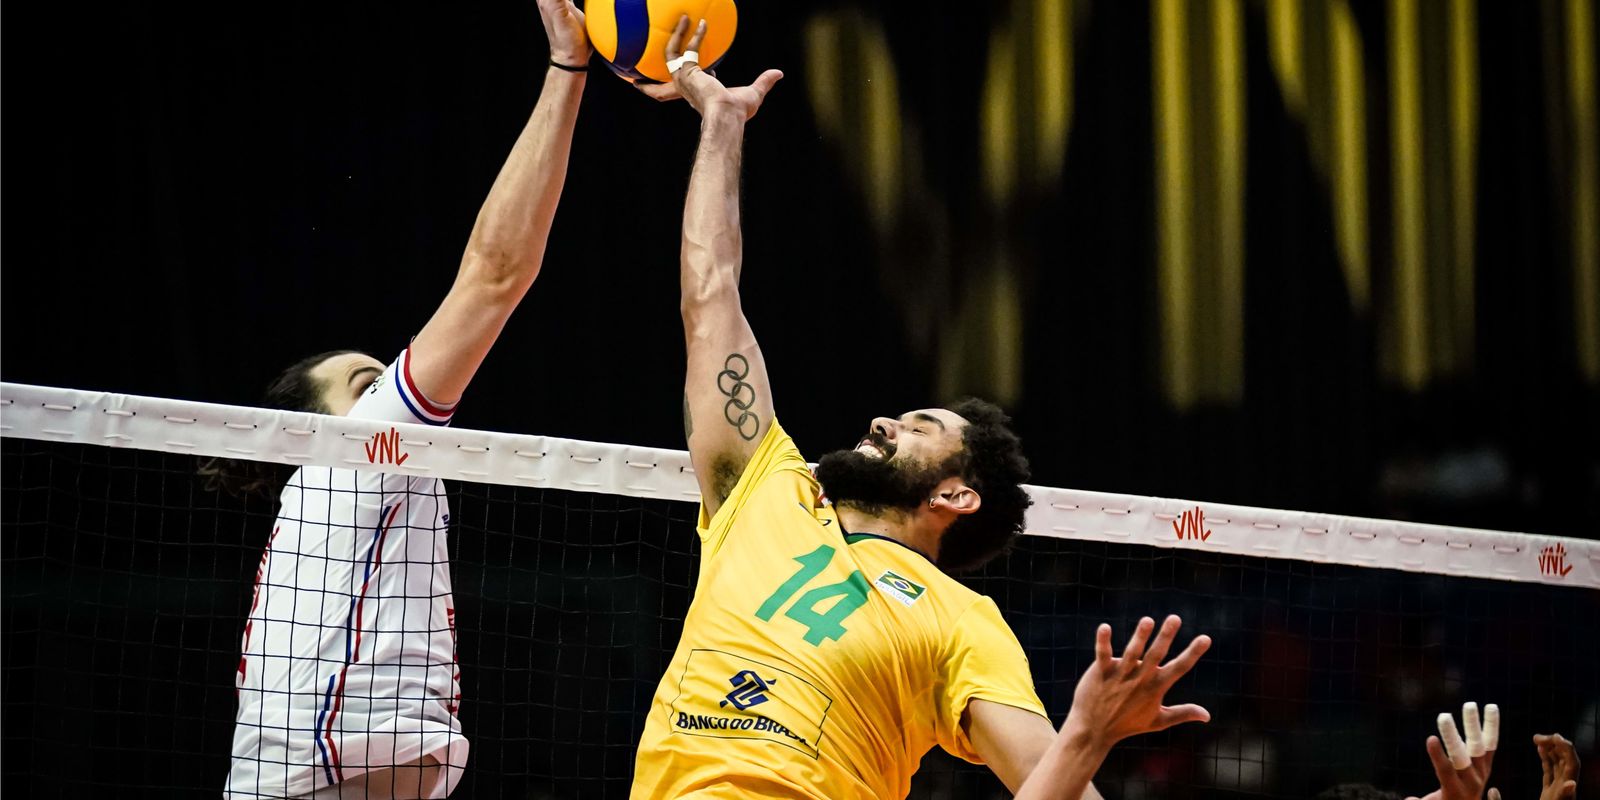 Le volleyball brésilien s’incline face à la France en Ligue des Nations